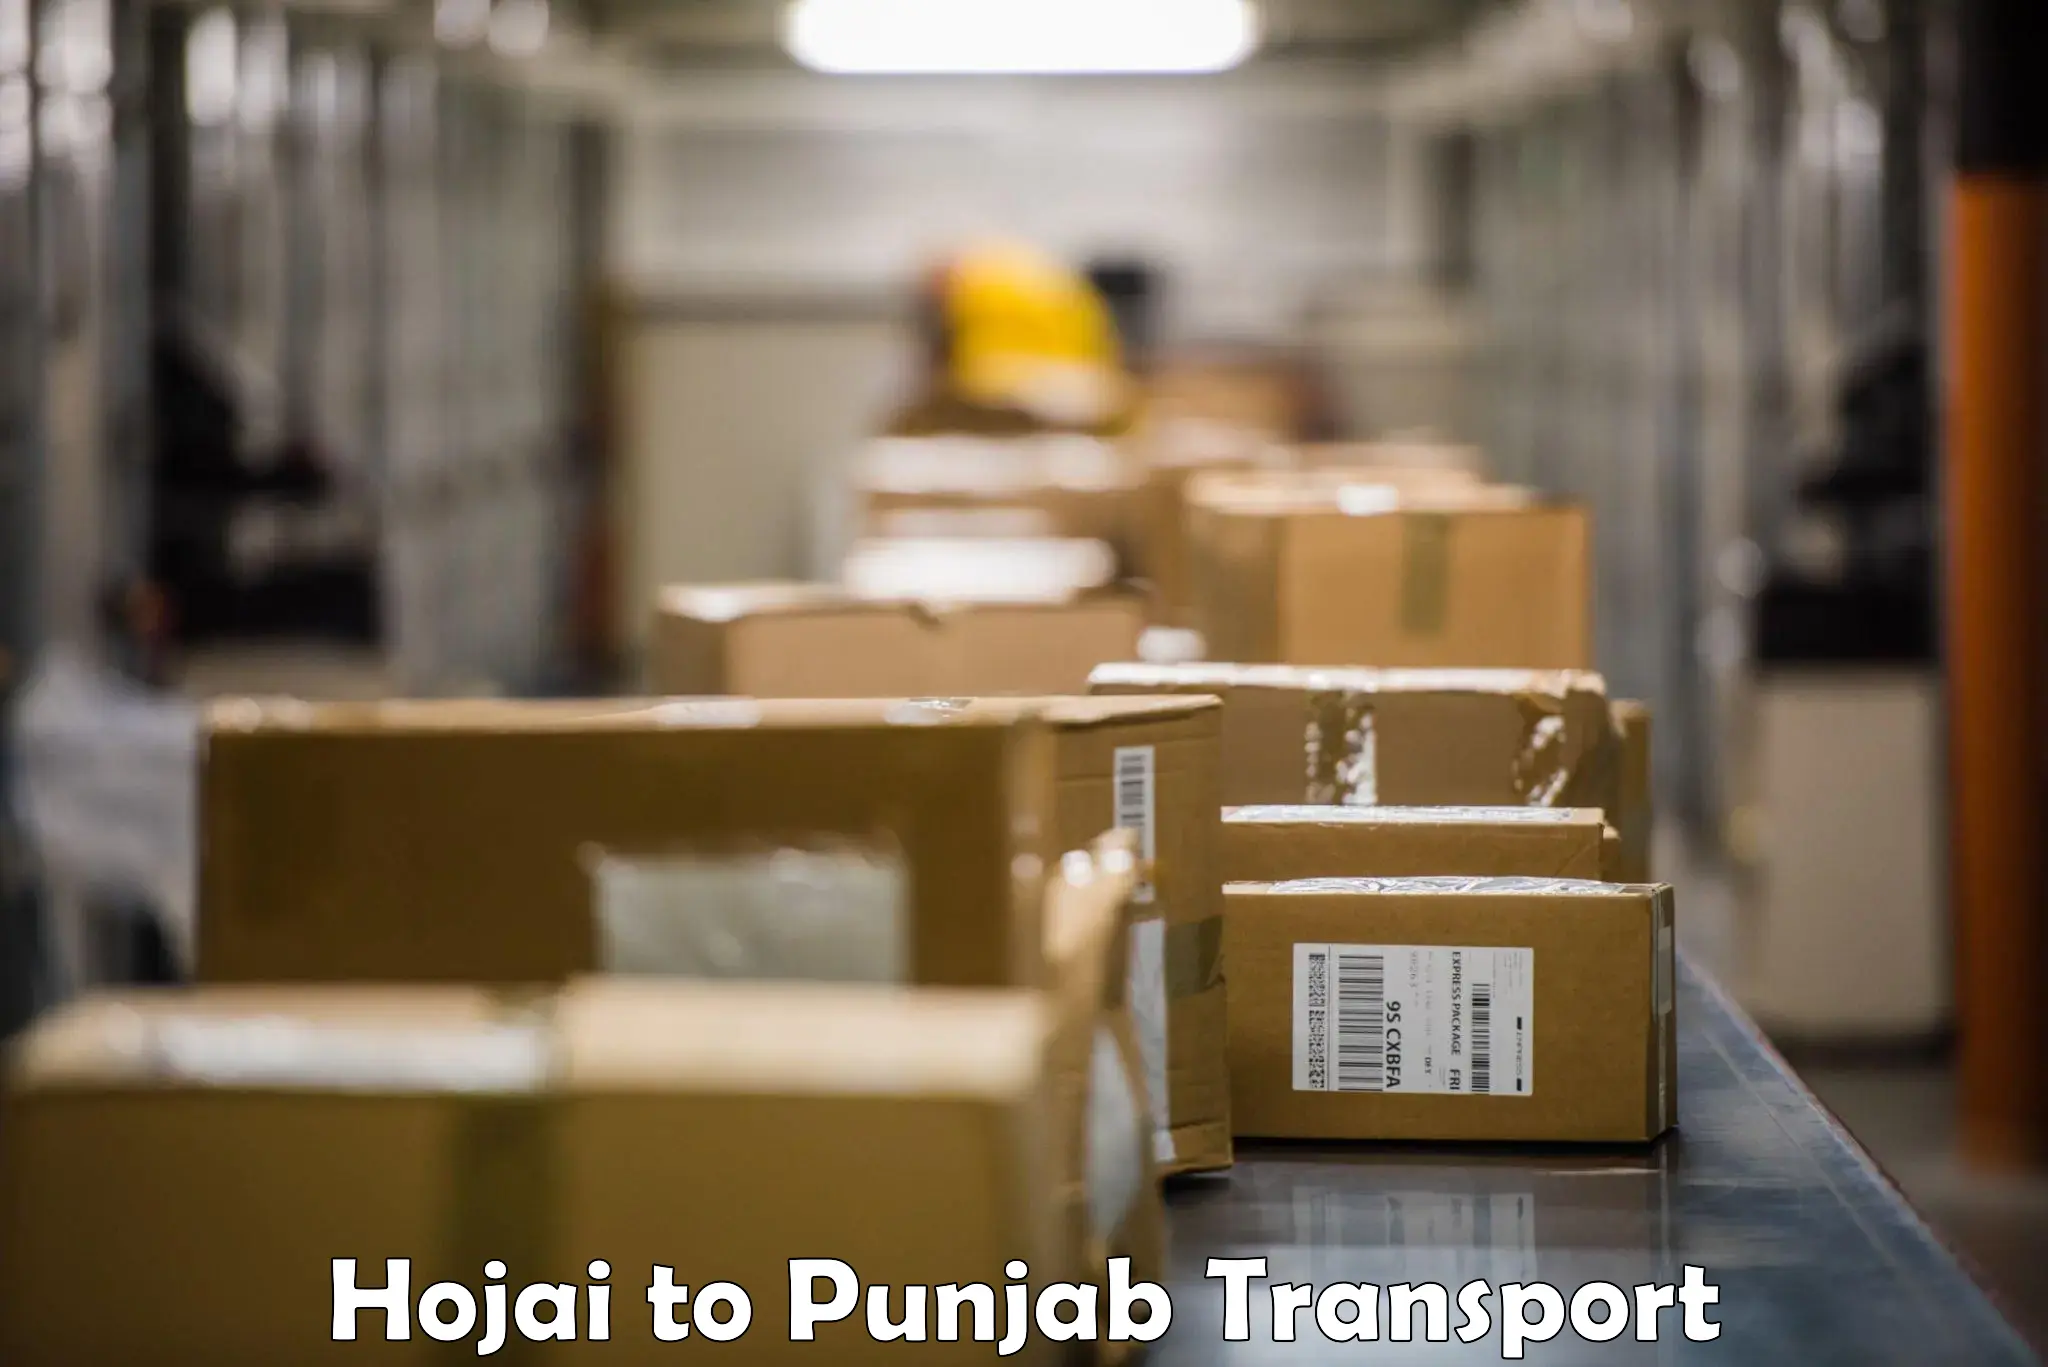 Nearby transport service Hojai to Punjab